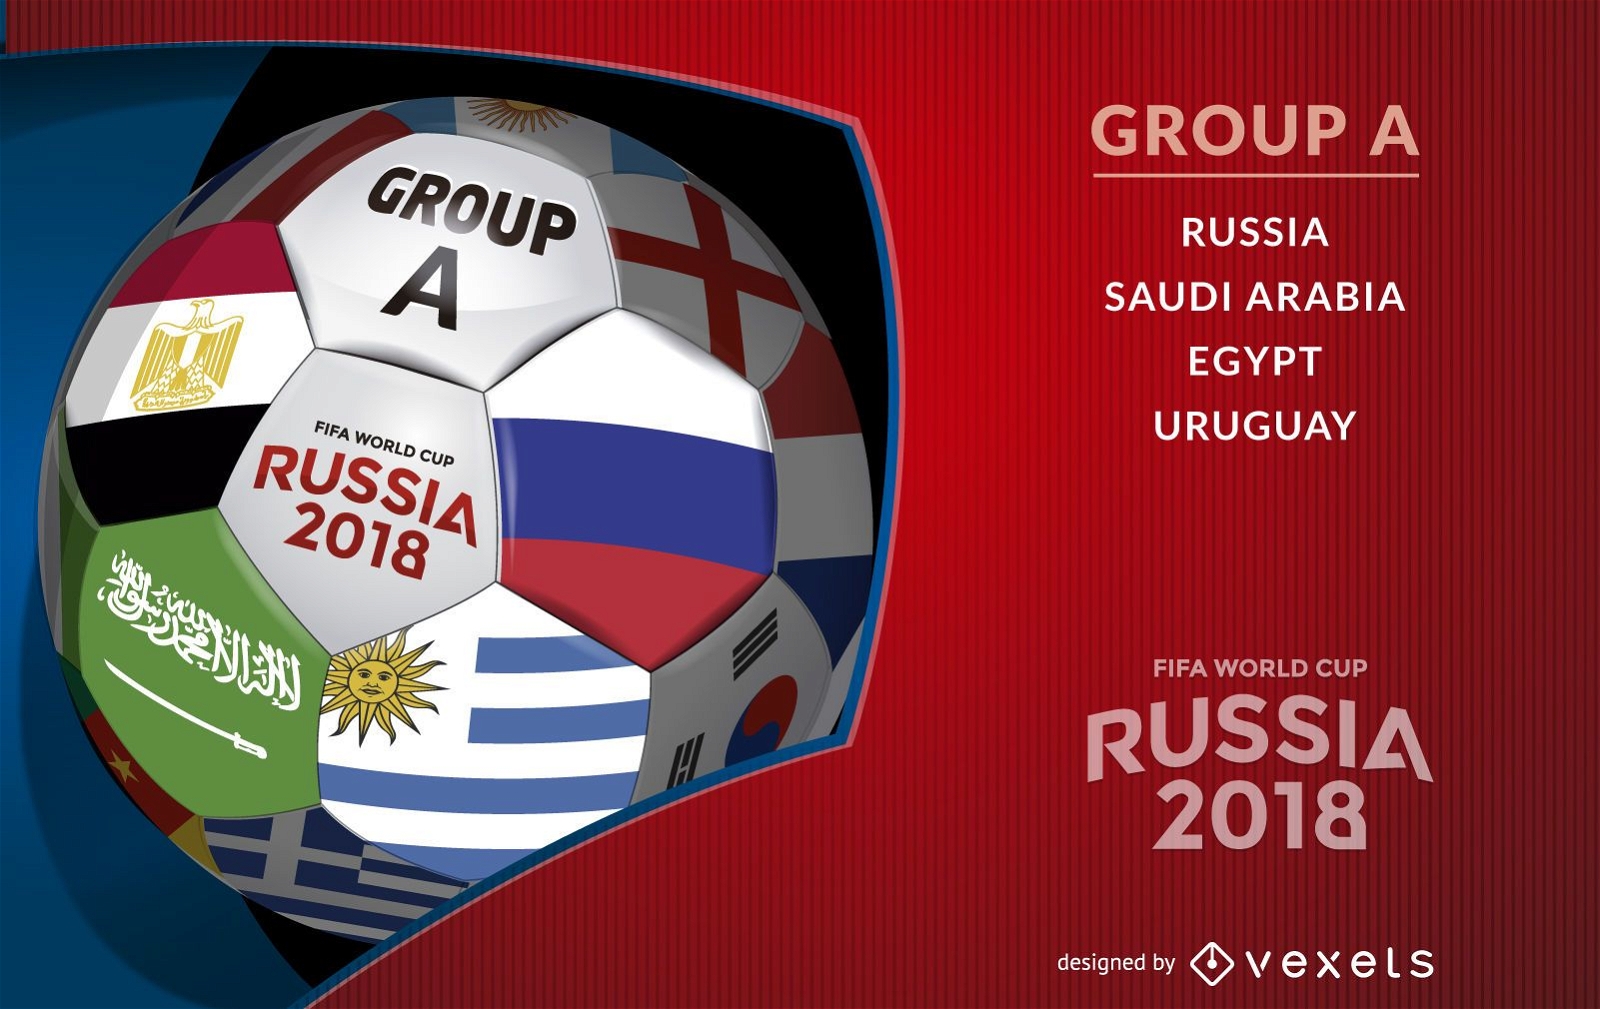 Bola da Rússia 2018 com Grupo A